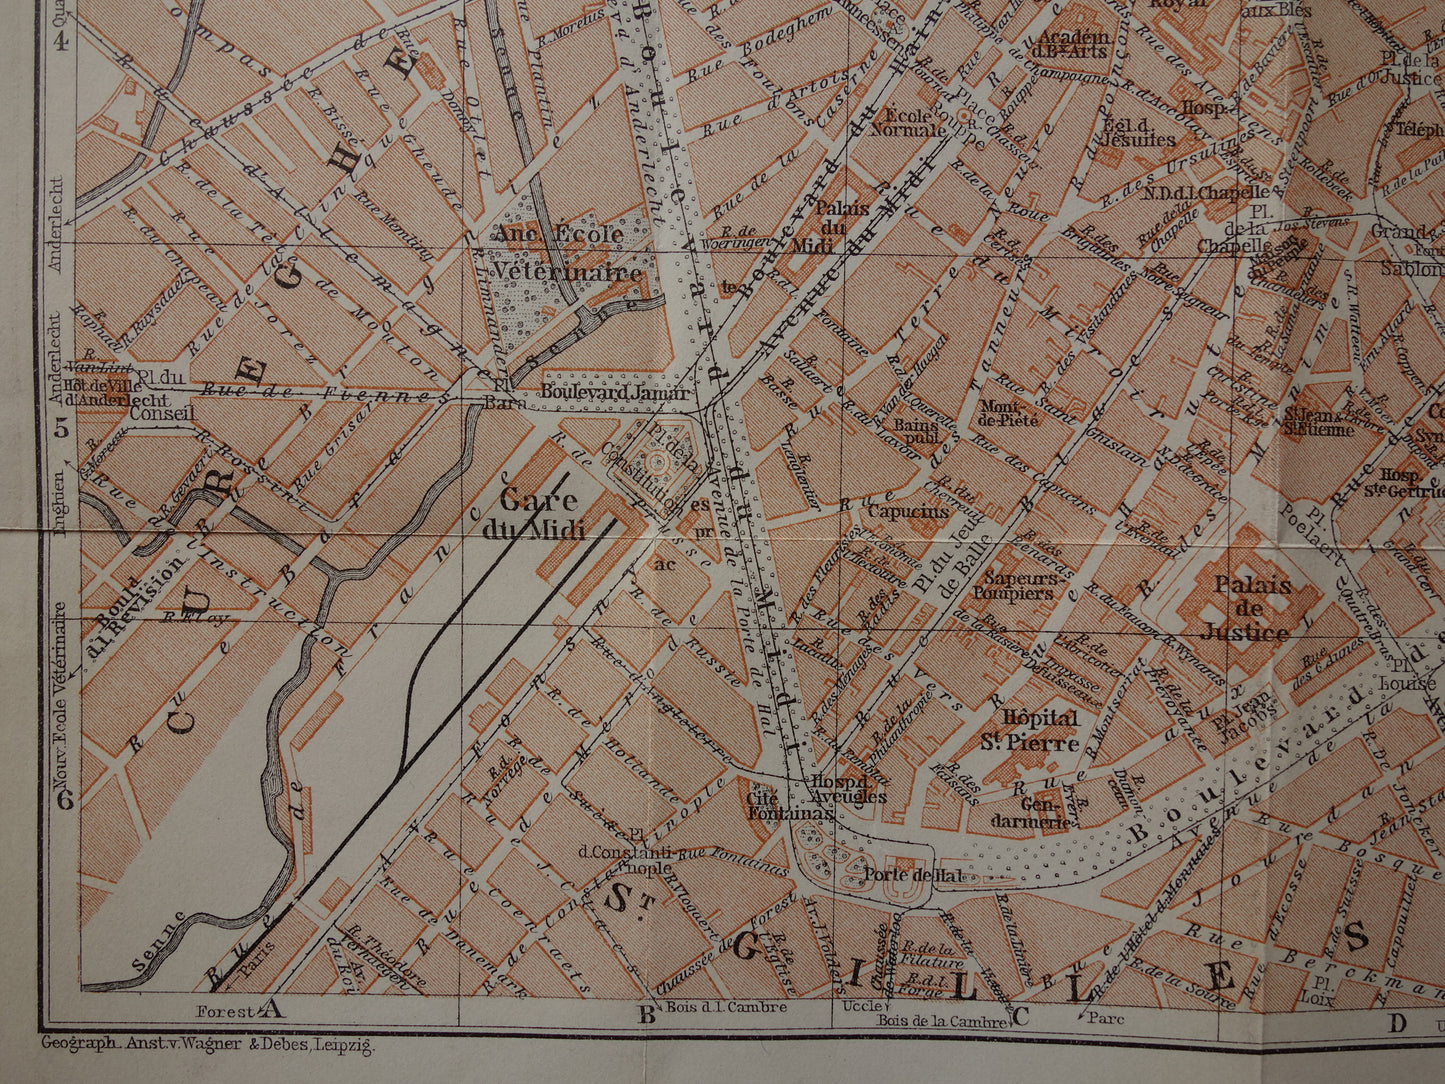 BRUSSEL oude kaart van Brussel België uit 1910 originele antieke historische plattegrond